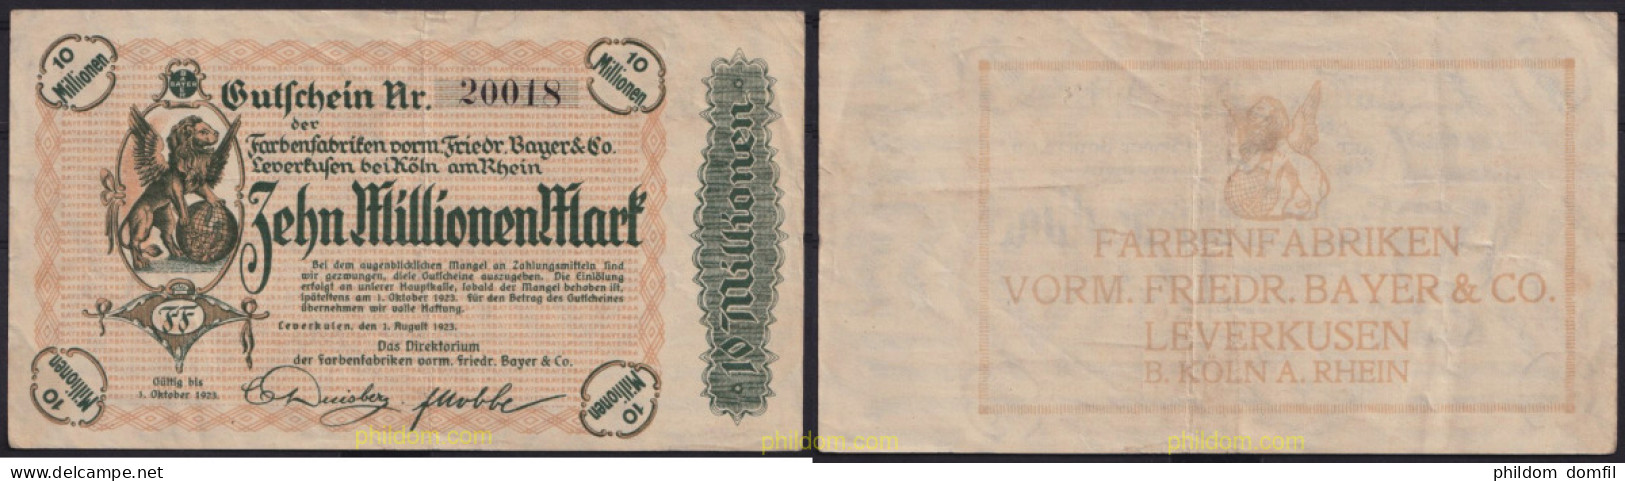 3671 ALEMANIA 1923 GERMANY 10000000 MARK 1923 LEVERKUSEN FARBENFABRIKEN VORM FRIEDR. BAYER & CO - Administración De La Deuda